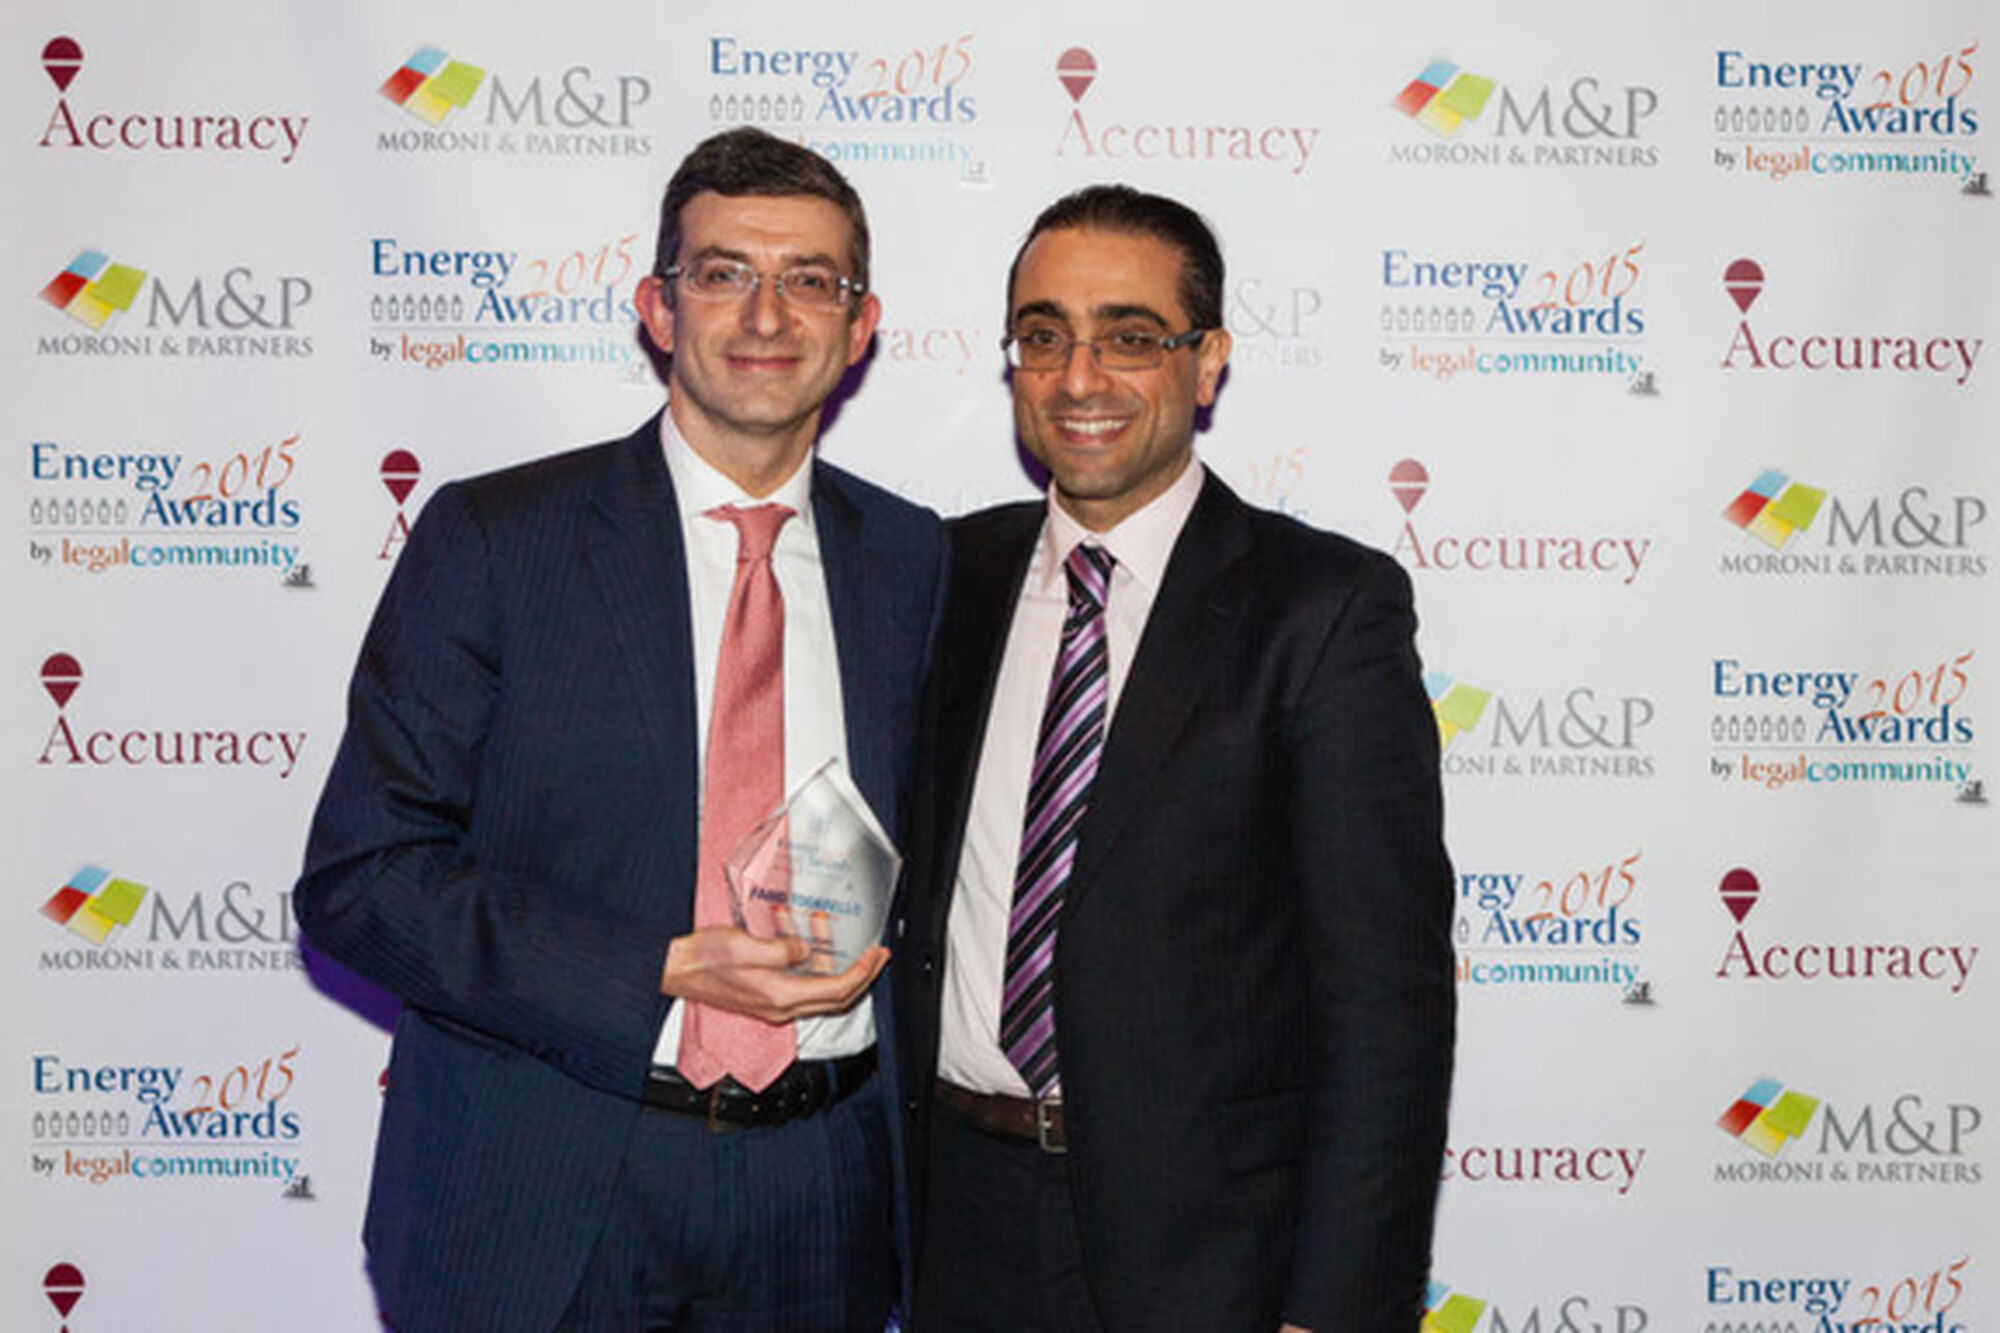 Energy Awards Legalcommunity 2015, Fabio Todarello Avvocato dell’anno.